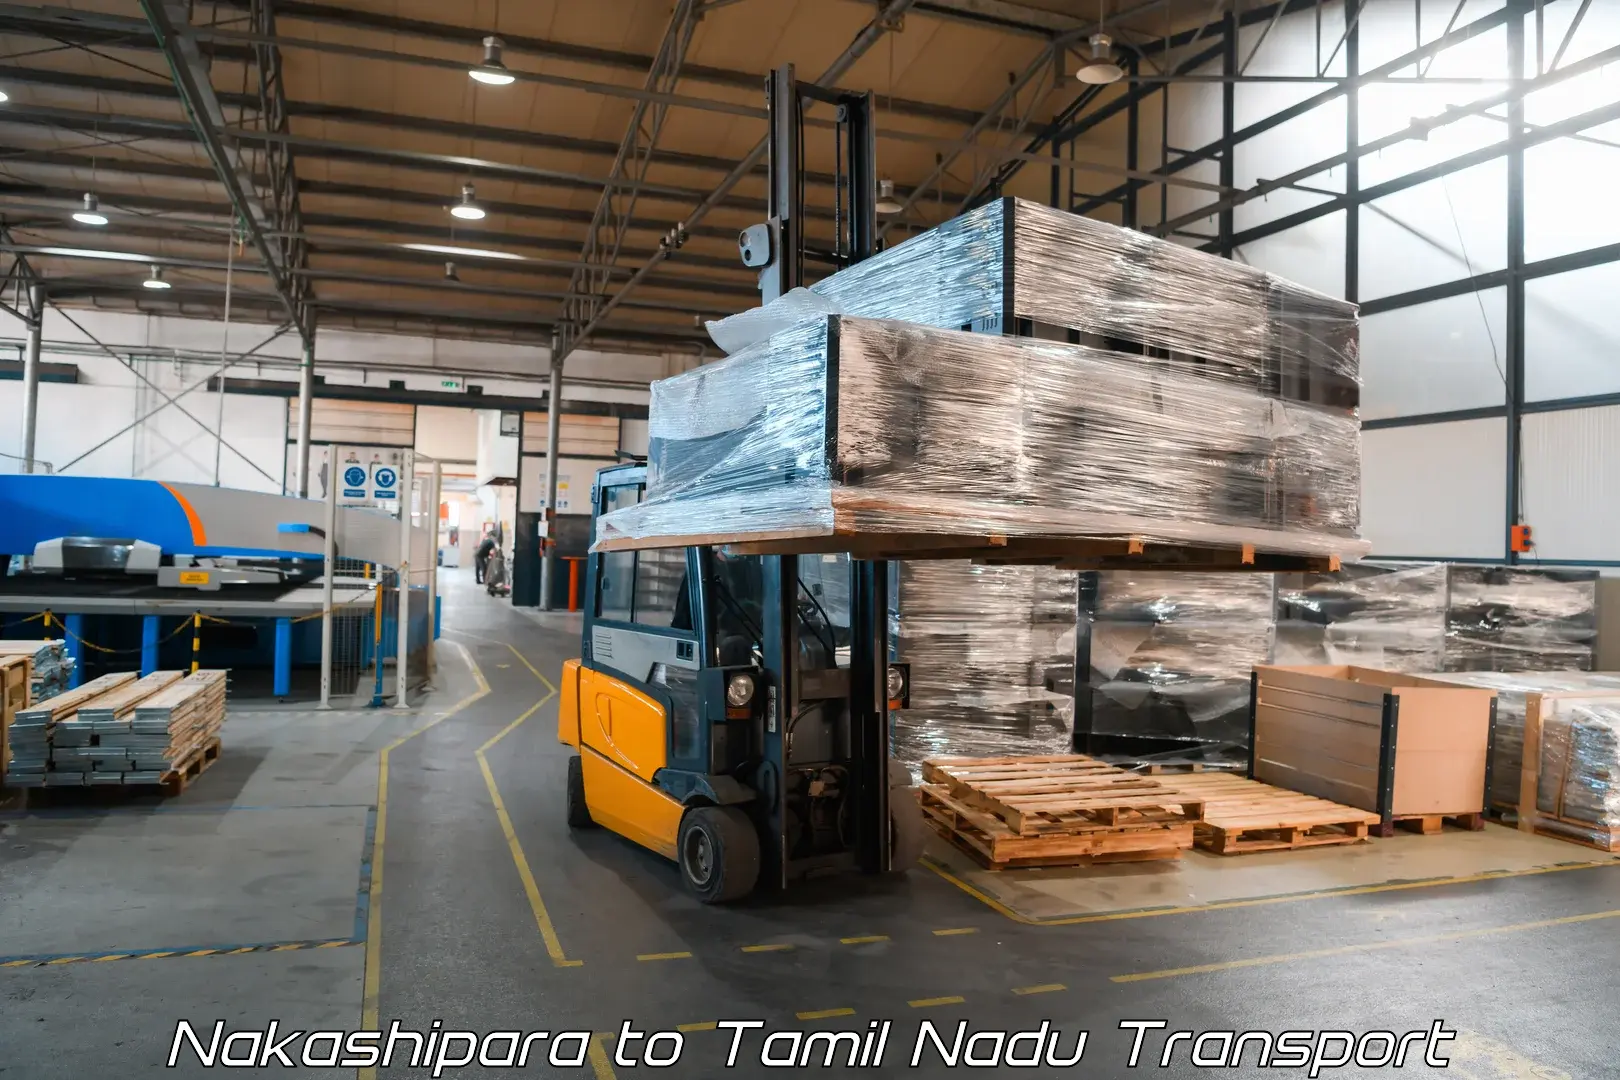 Luggage transport services Nakashipara to Memalur